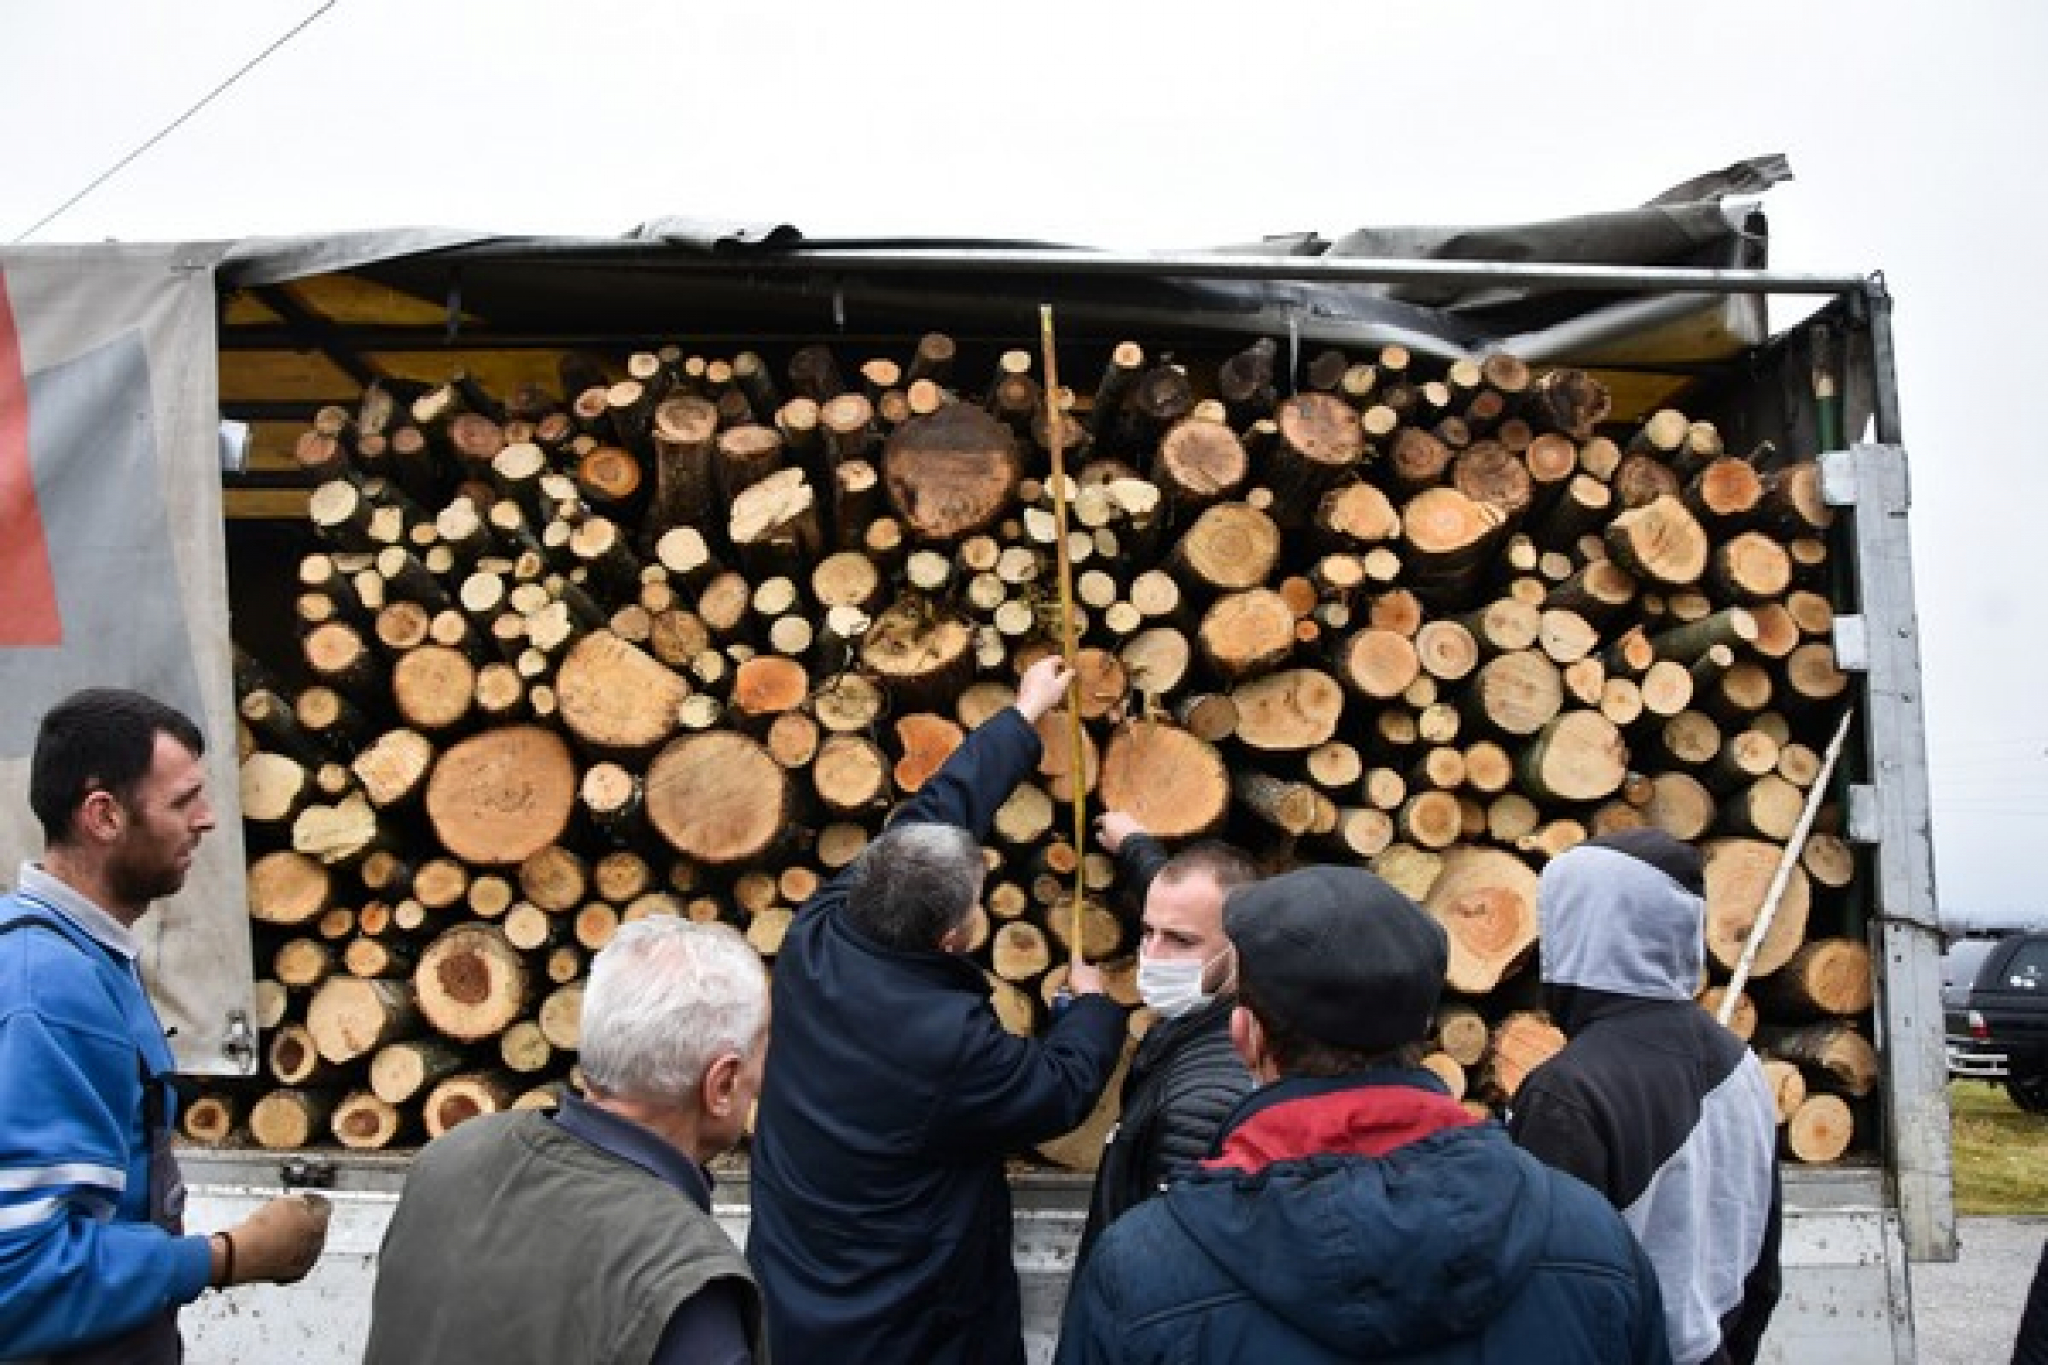 PLATIMO DESET, DOBIJEMO OSAM KUBIKA Kako nas potkradaju podli prodavci drva i ima li načina da se zaštitimo?